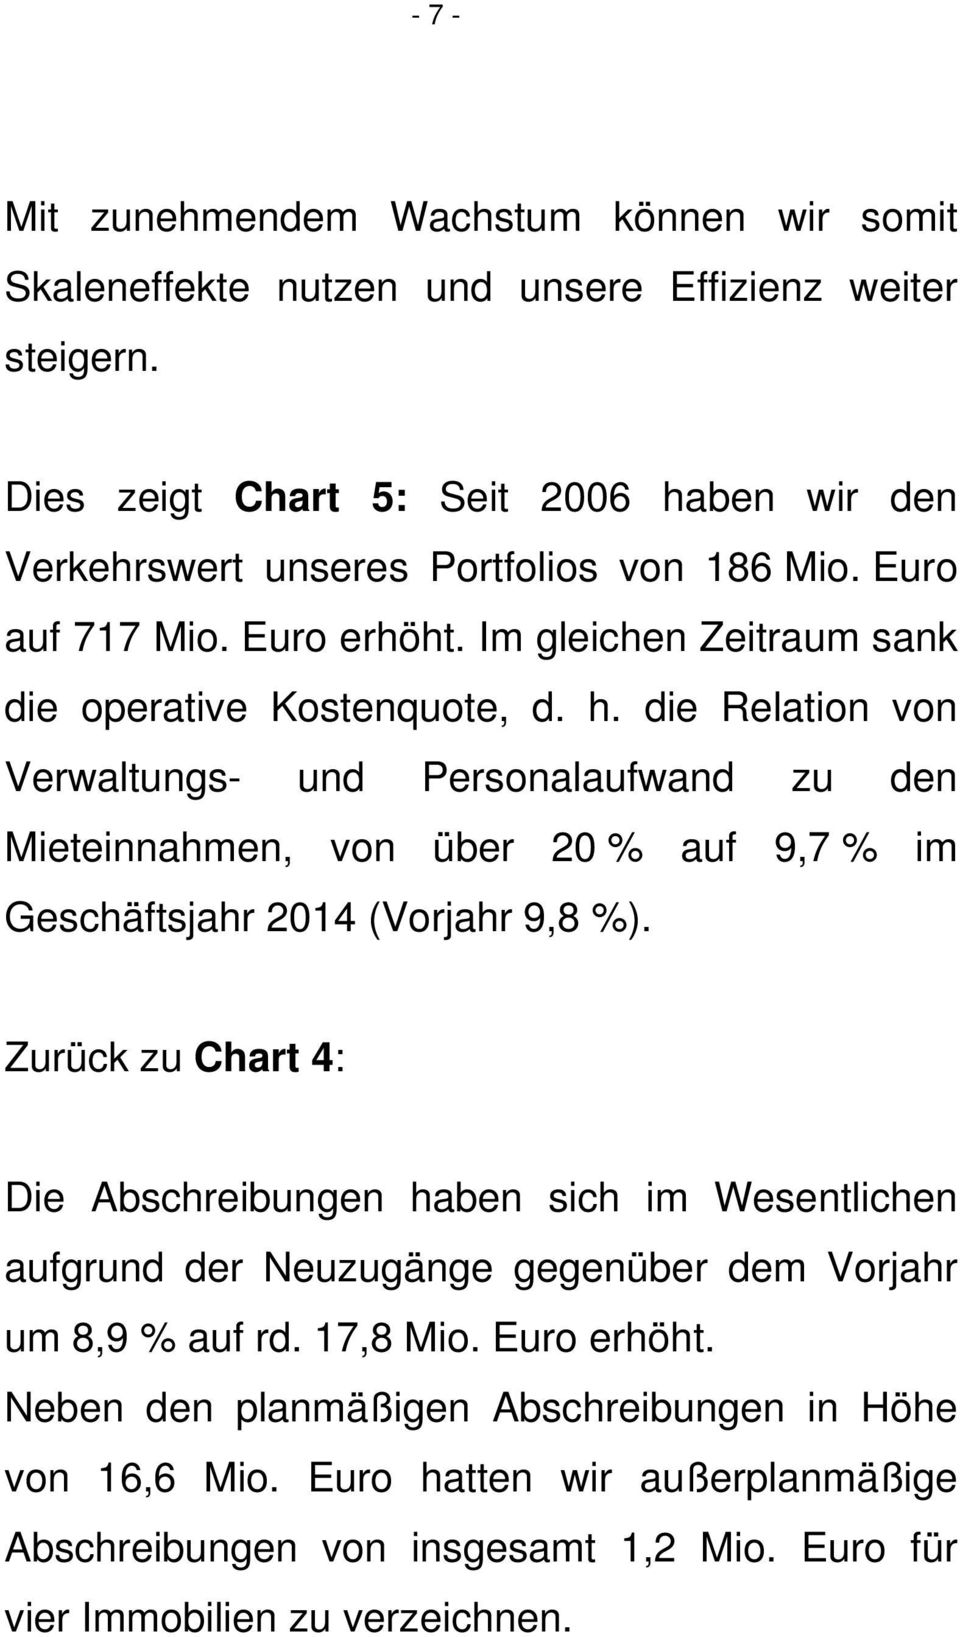 Zurück zu Chart 4: Die Abschreibungen haben sich im Wesentlichen aufgrund der Neuzugänge gegenüber dem Vorjahr um 8,9 % auf rd. 17,8 Mio. Euro erhöht.